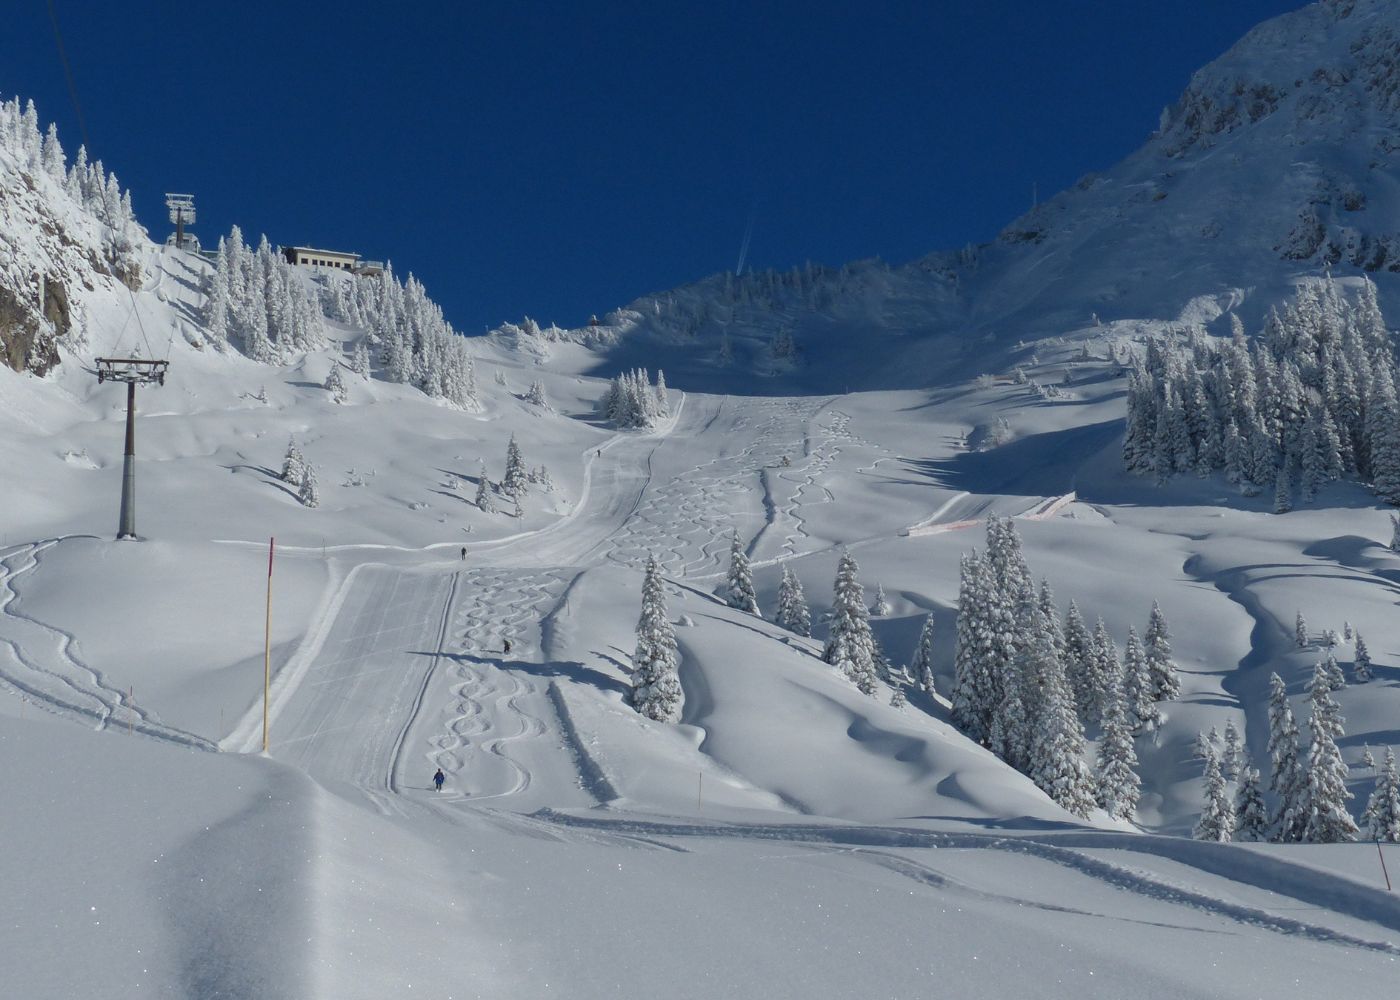 Ski d'occasion : Trouvez votre matériel à petit prix